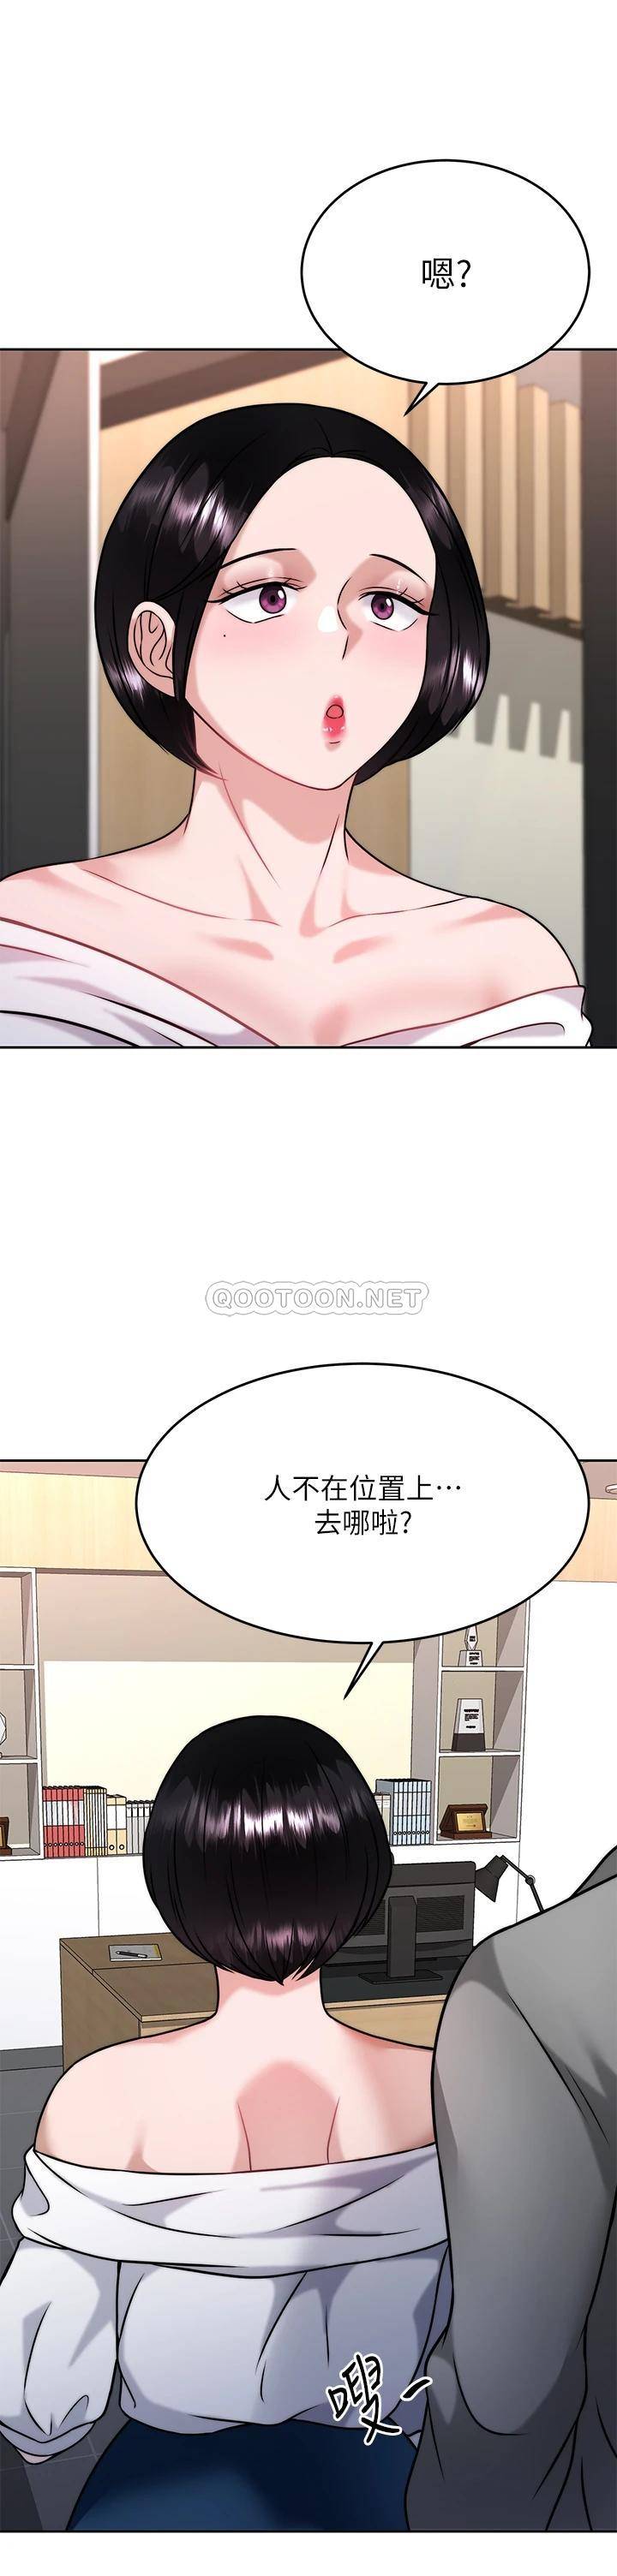 韩国污漫画 催眠治欲師 第31话偷偷自慰被发现?! 1